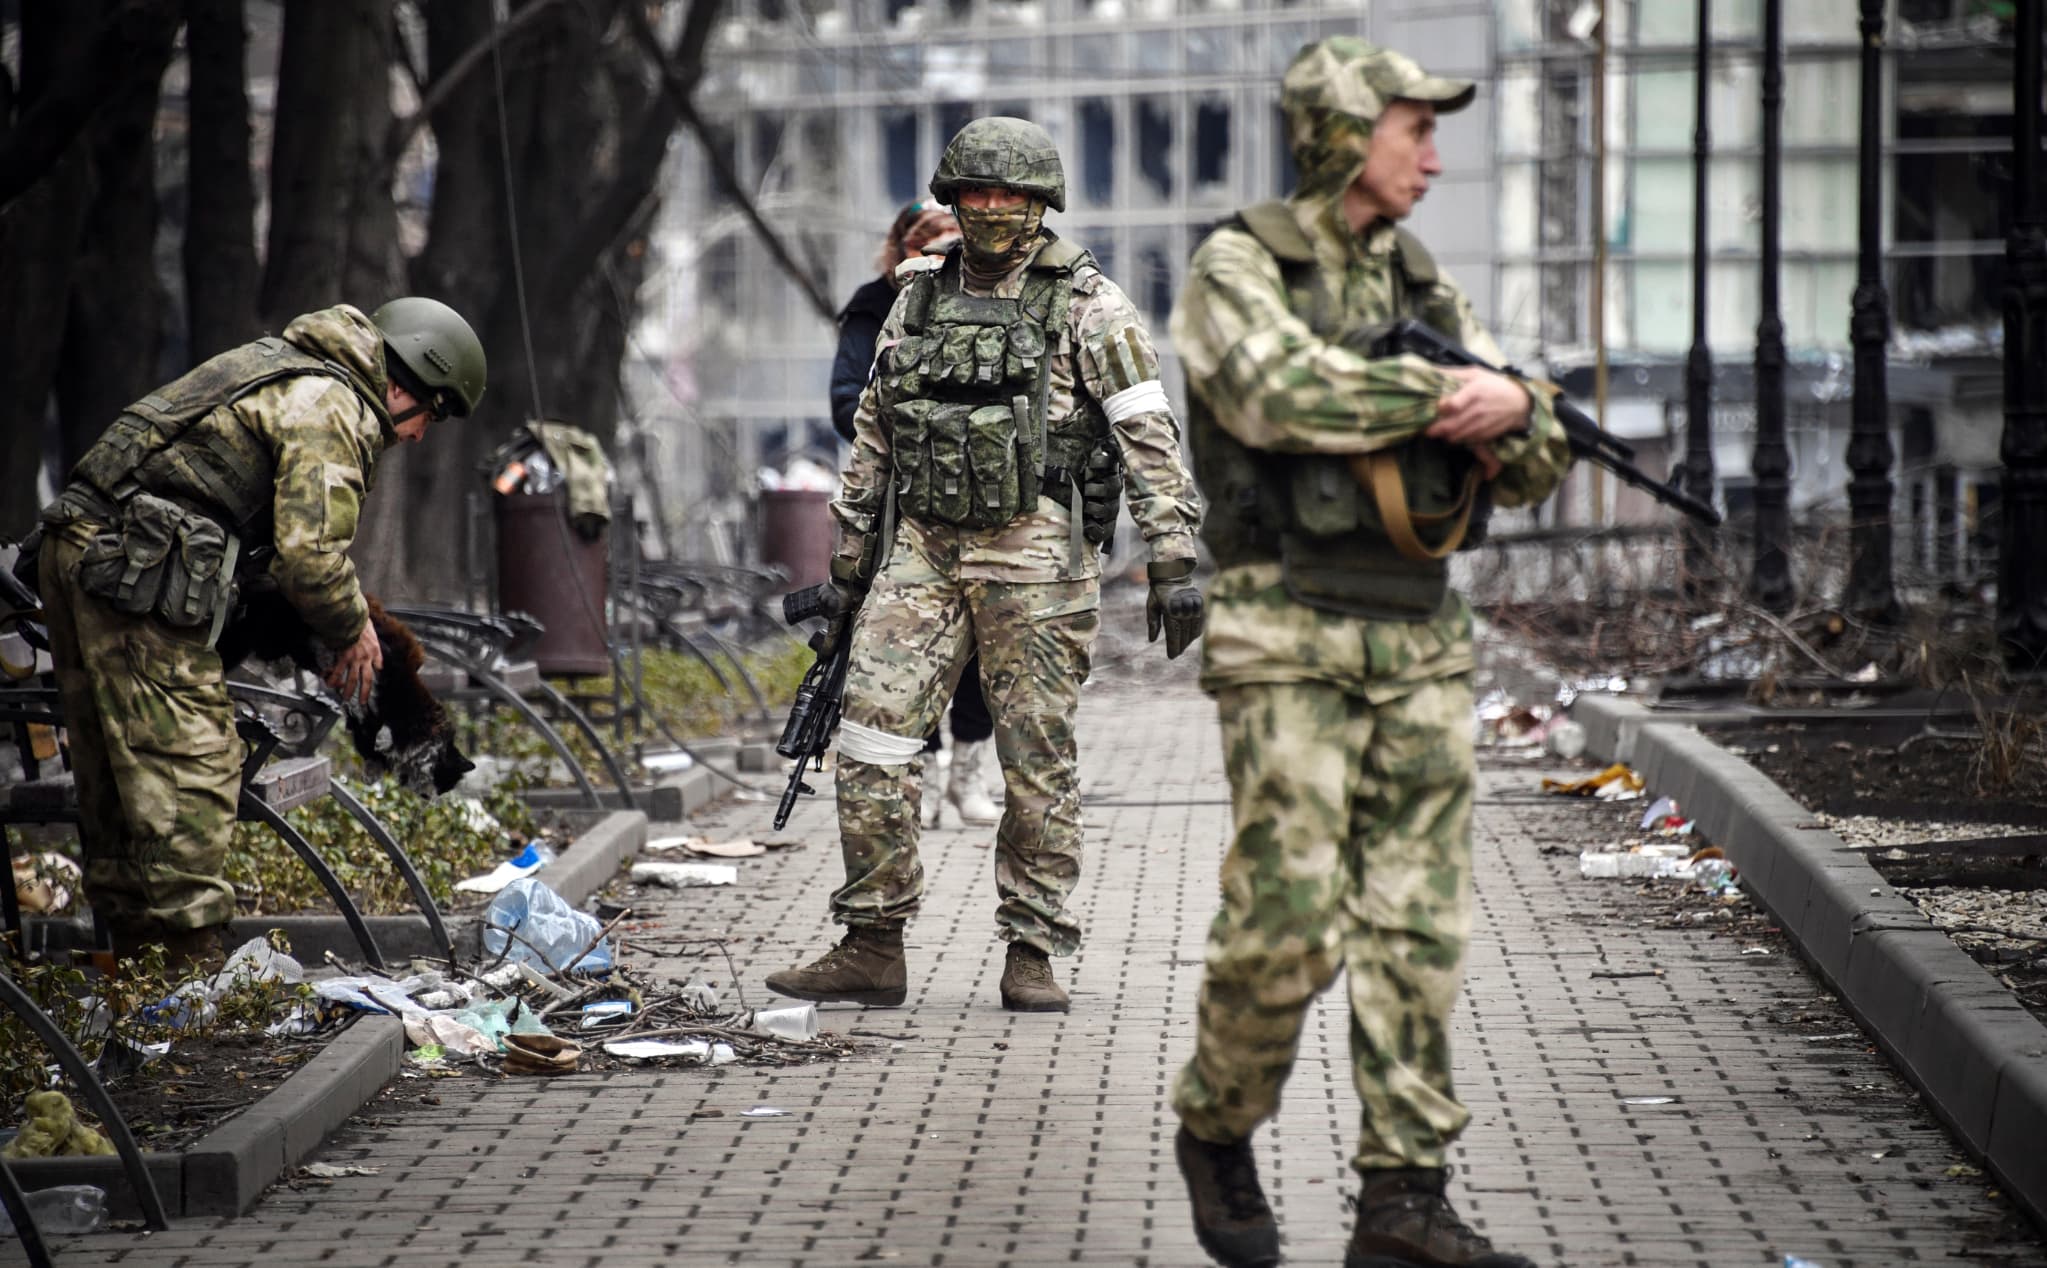 guerre en ukraine: les états-unis accusent la russie d'avoir usé d'un agent chimique contre des soldats de kiev